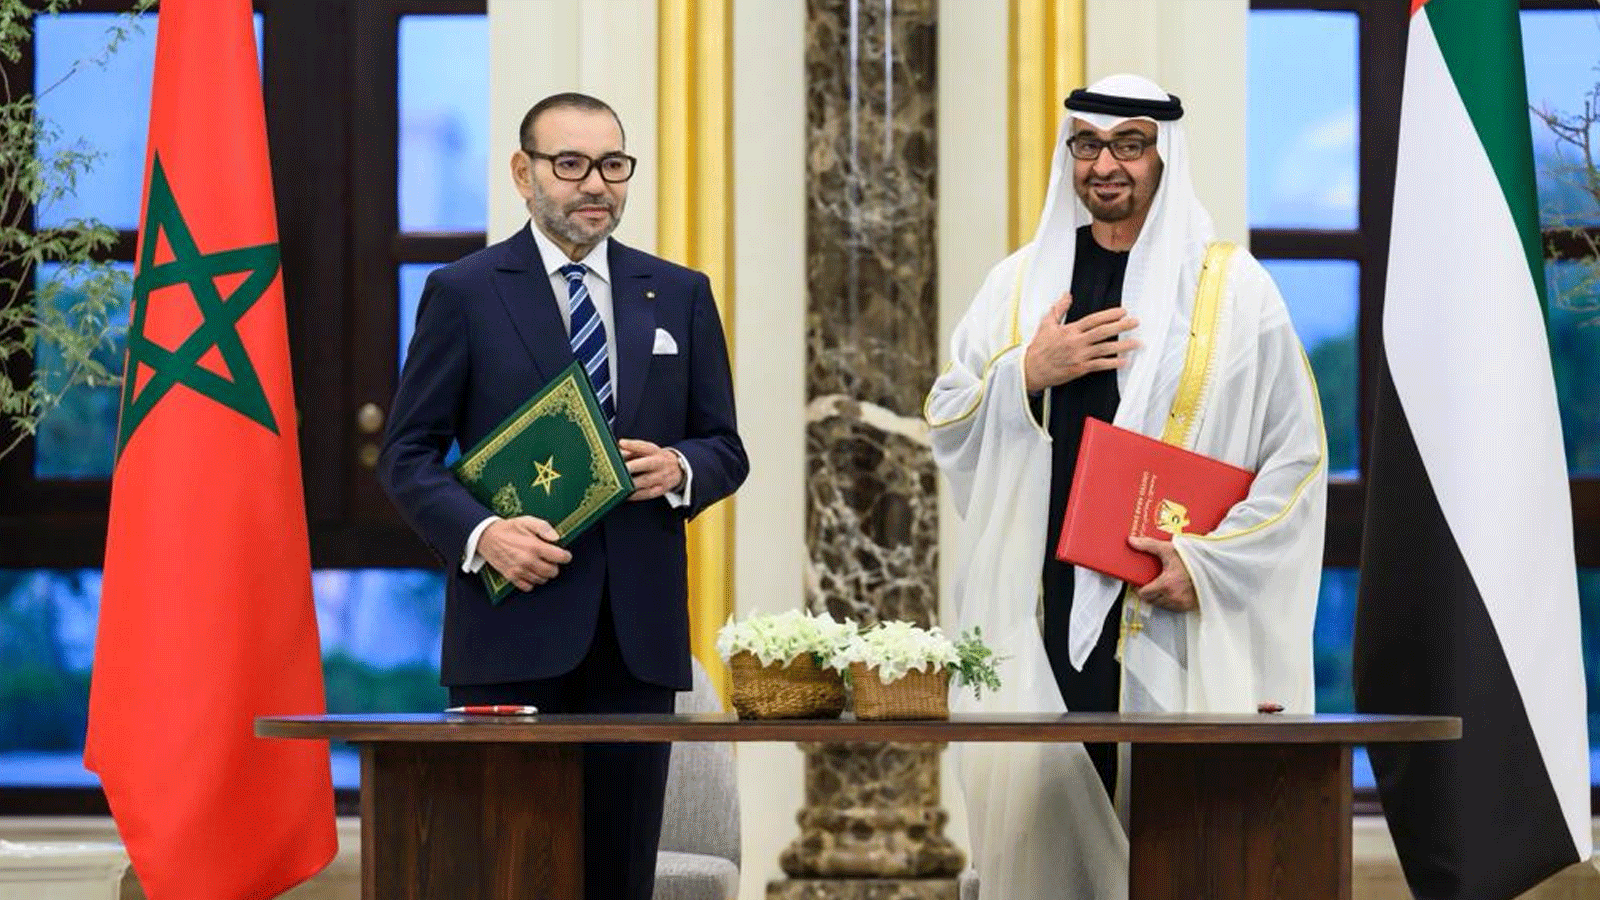 رئيس الامارات الشيخ محمد بن زايد وملك المغرب محمد السادس بعيد توقيع إعلان الشراكة بين البلدين